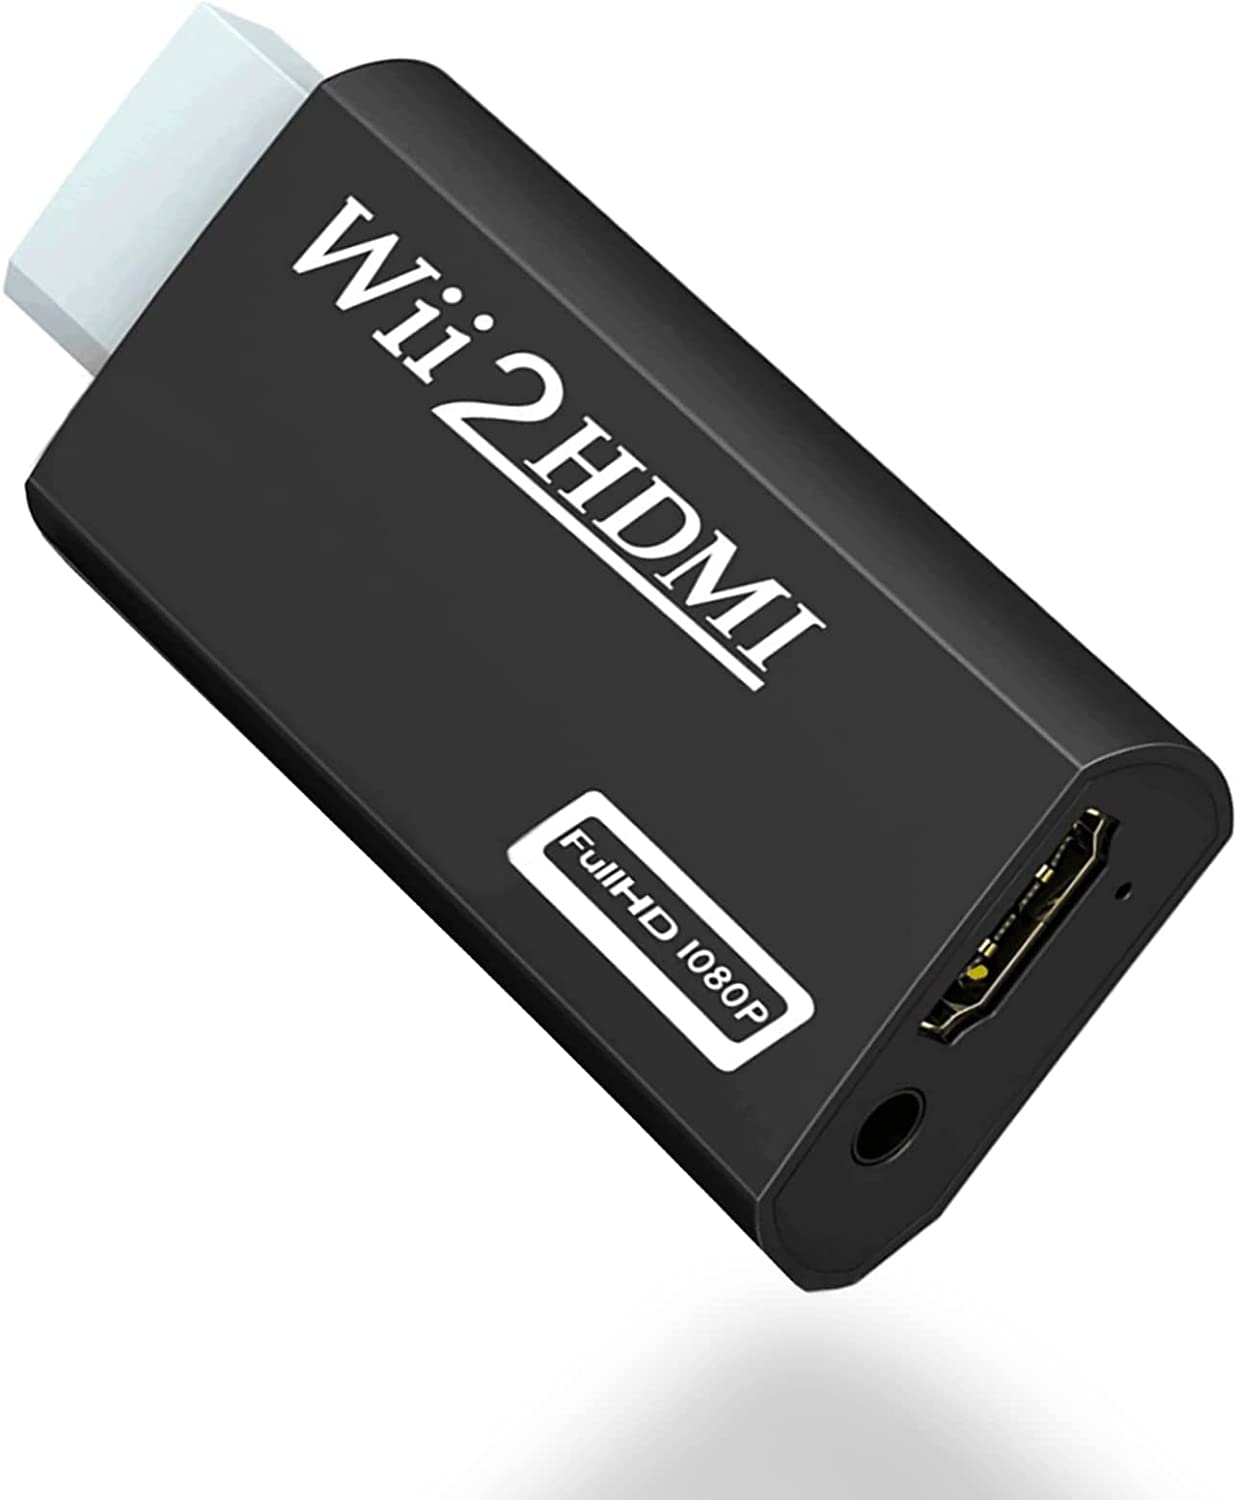 Adaptador Wii A Hdmi Compatible Con Wii Y Wii U